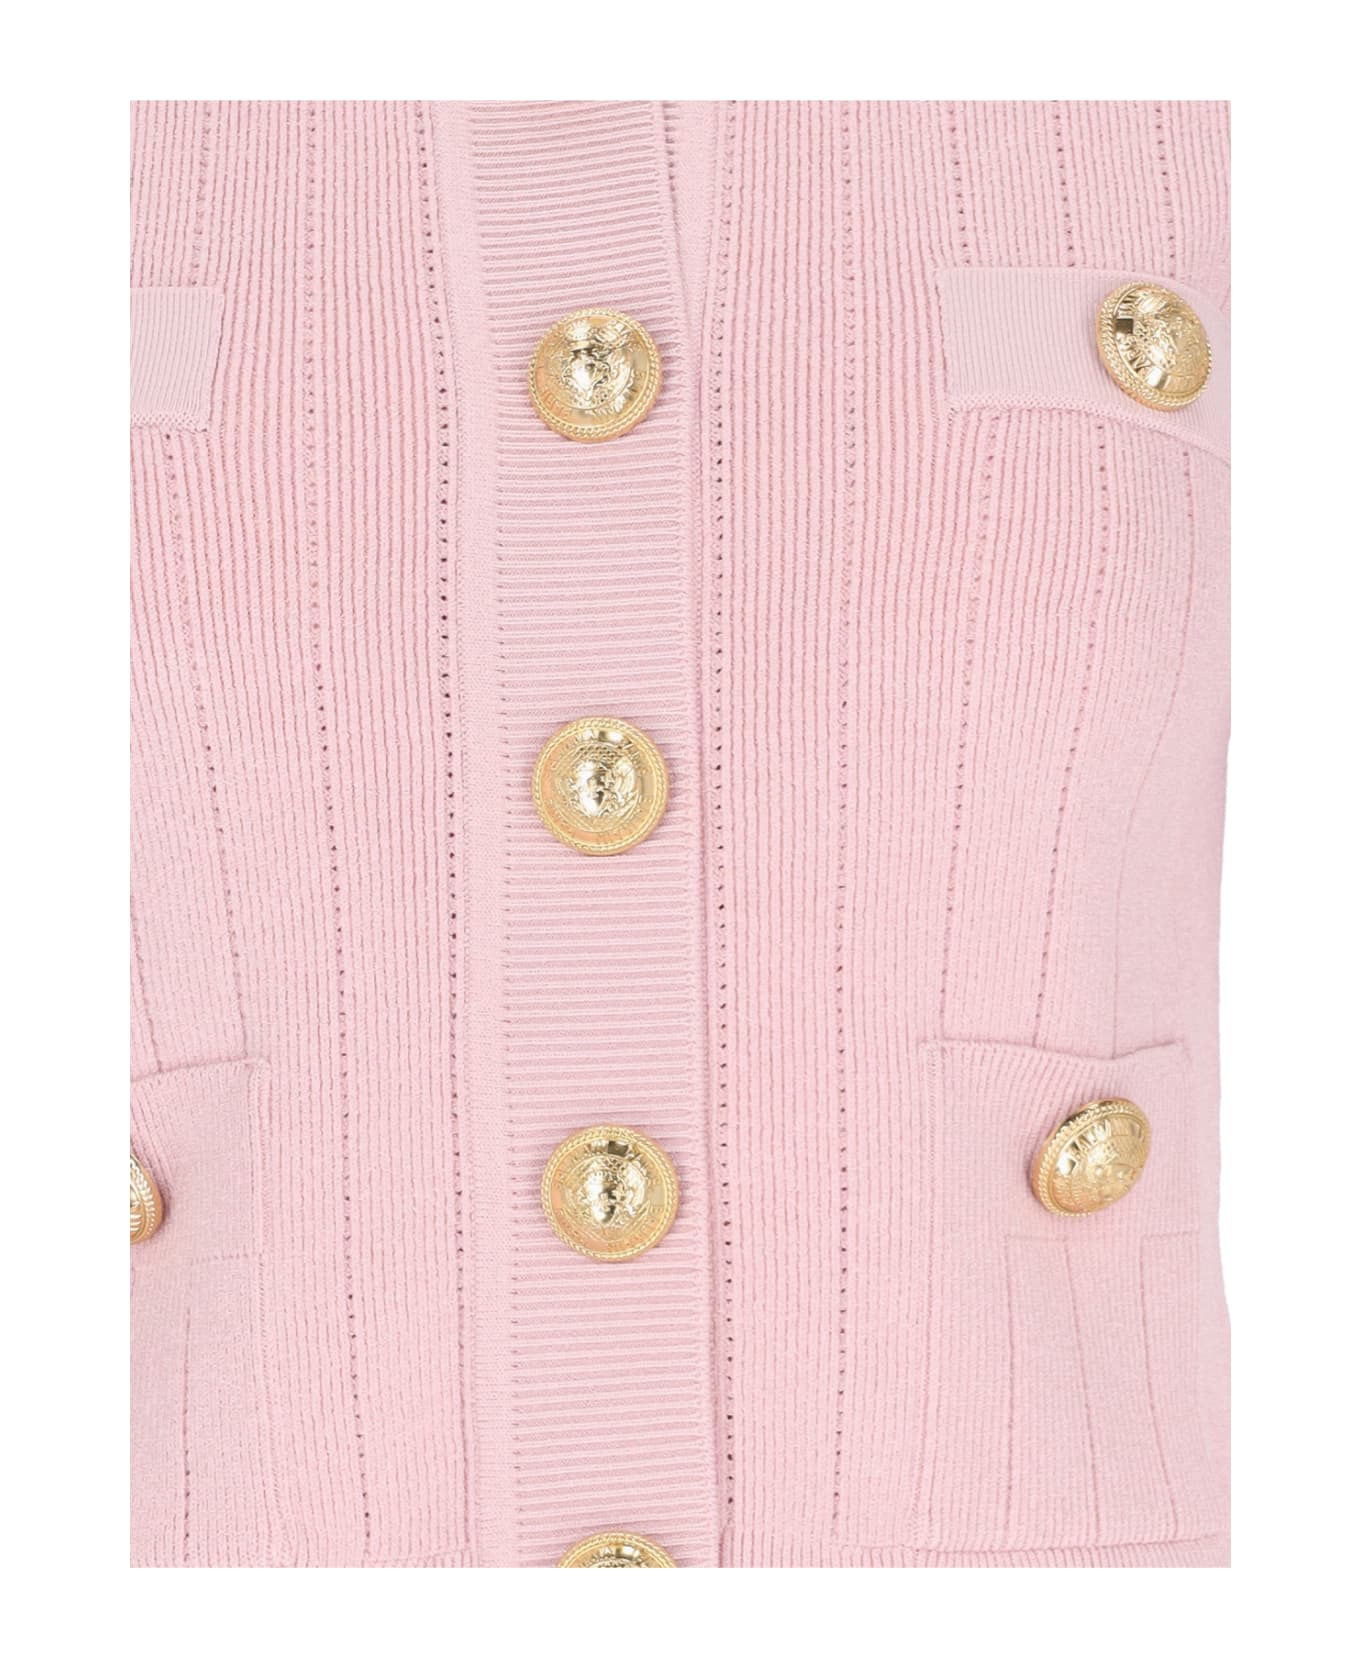 Balmain Knitted Cardigan - Pink